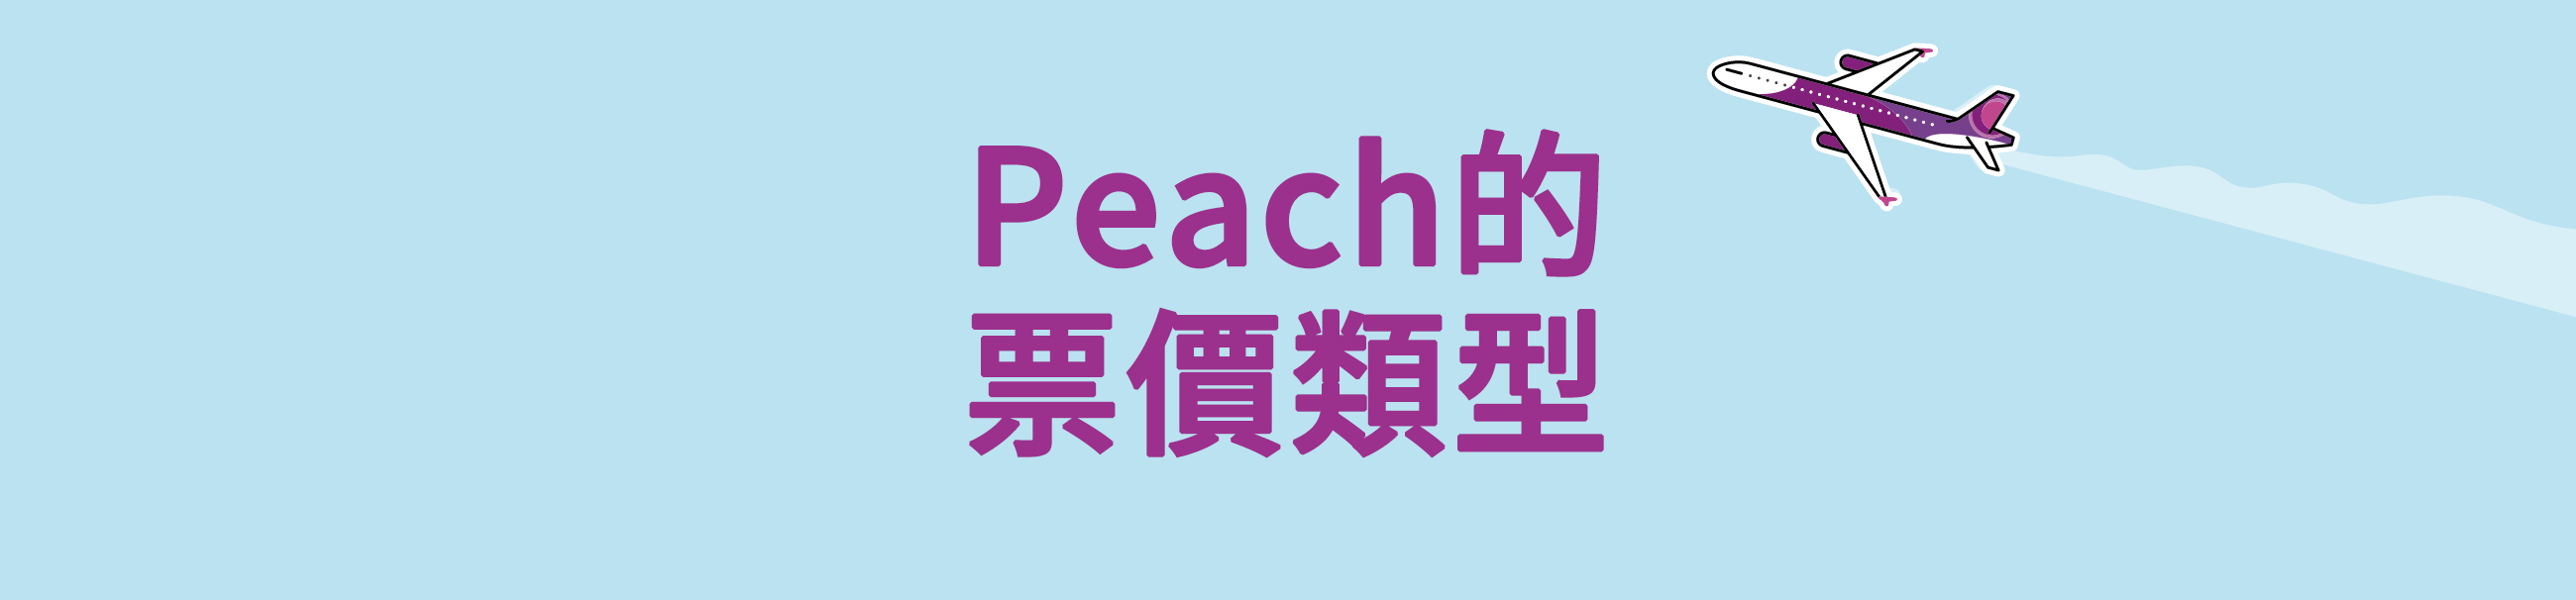 Peach的票價類型